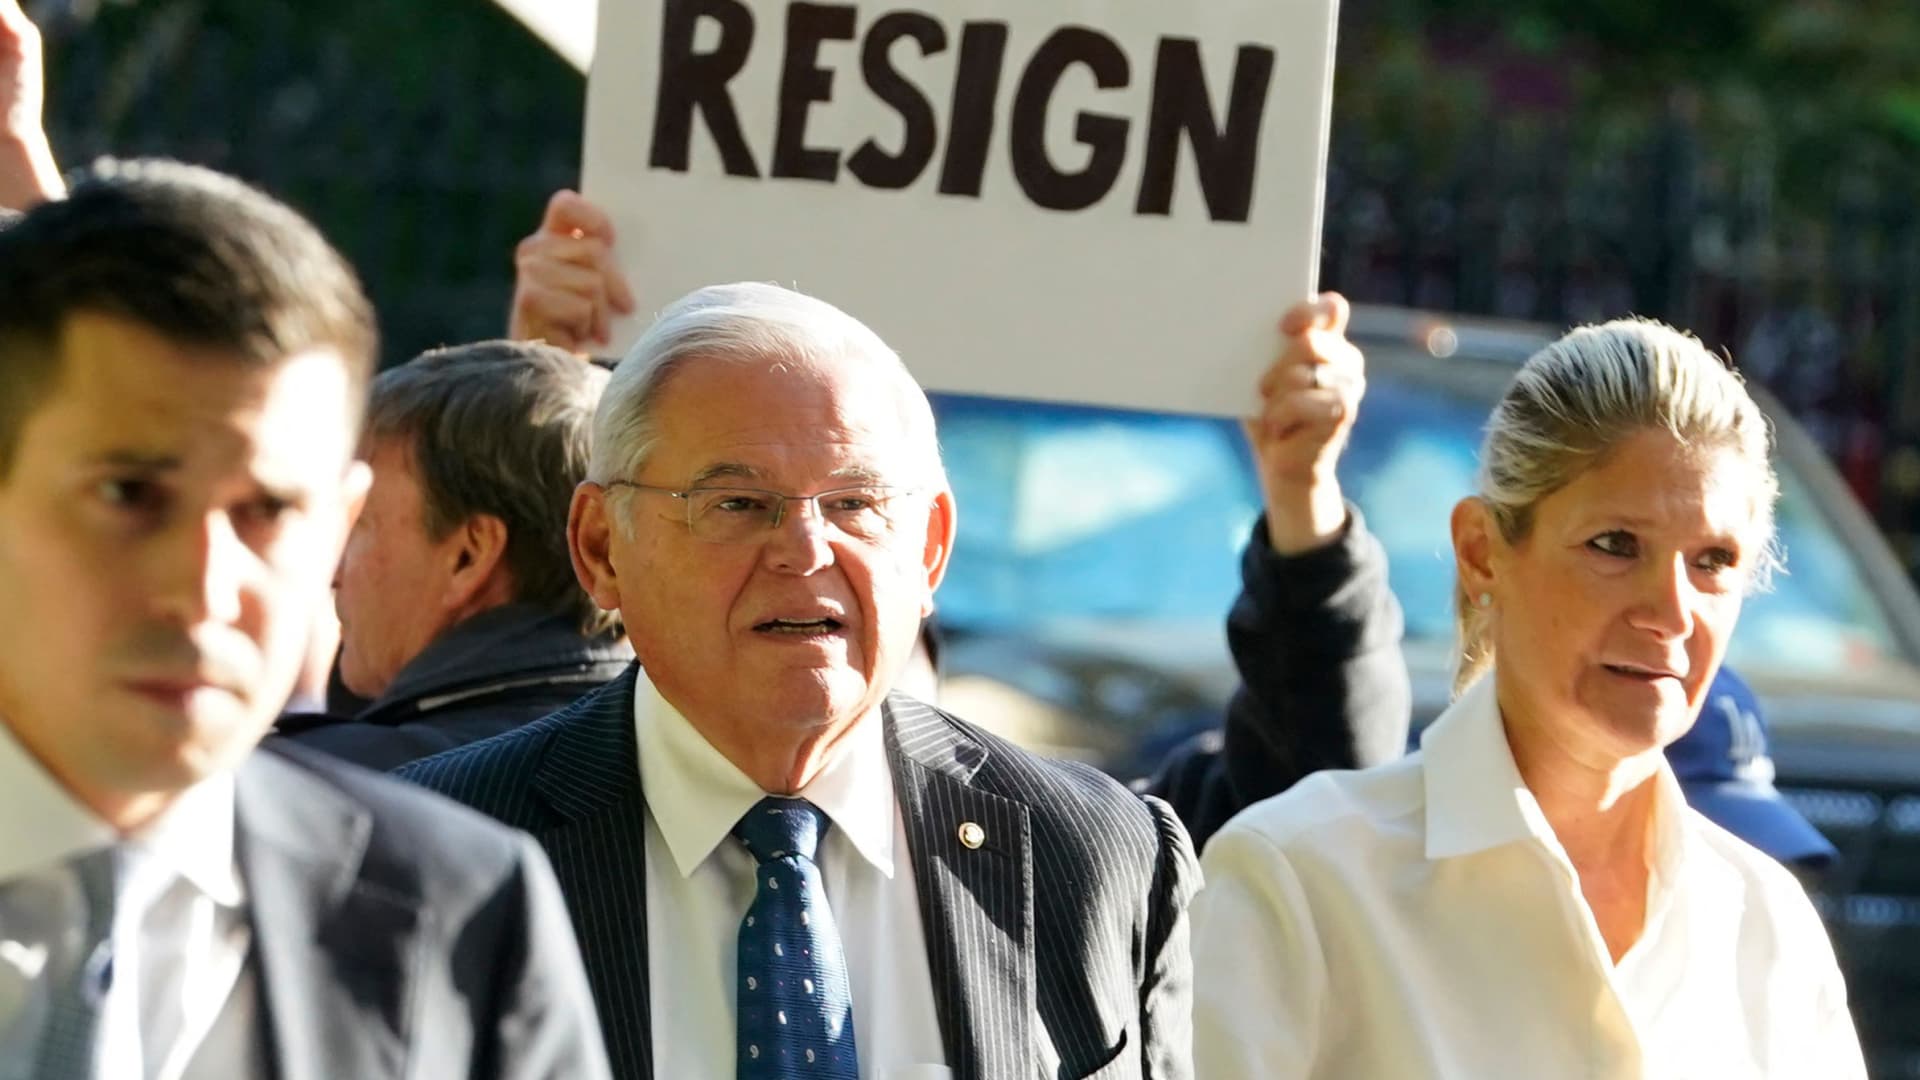 Le sénateur Bob Menendez fait allusion à une potentielle démission suite à une affaire de corruption